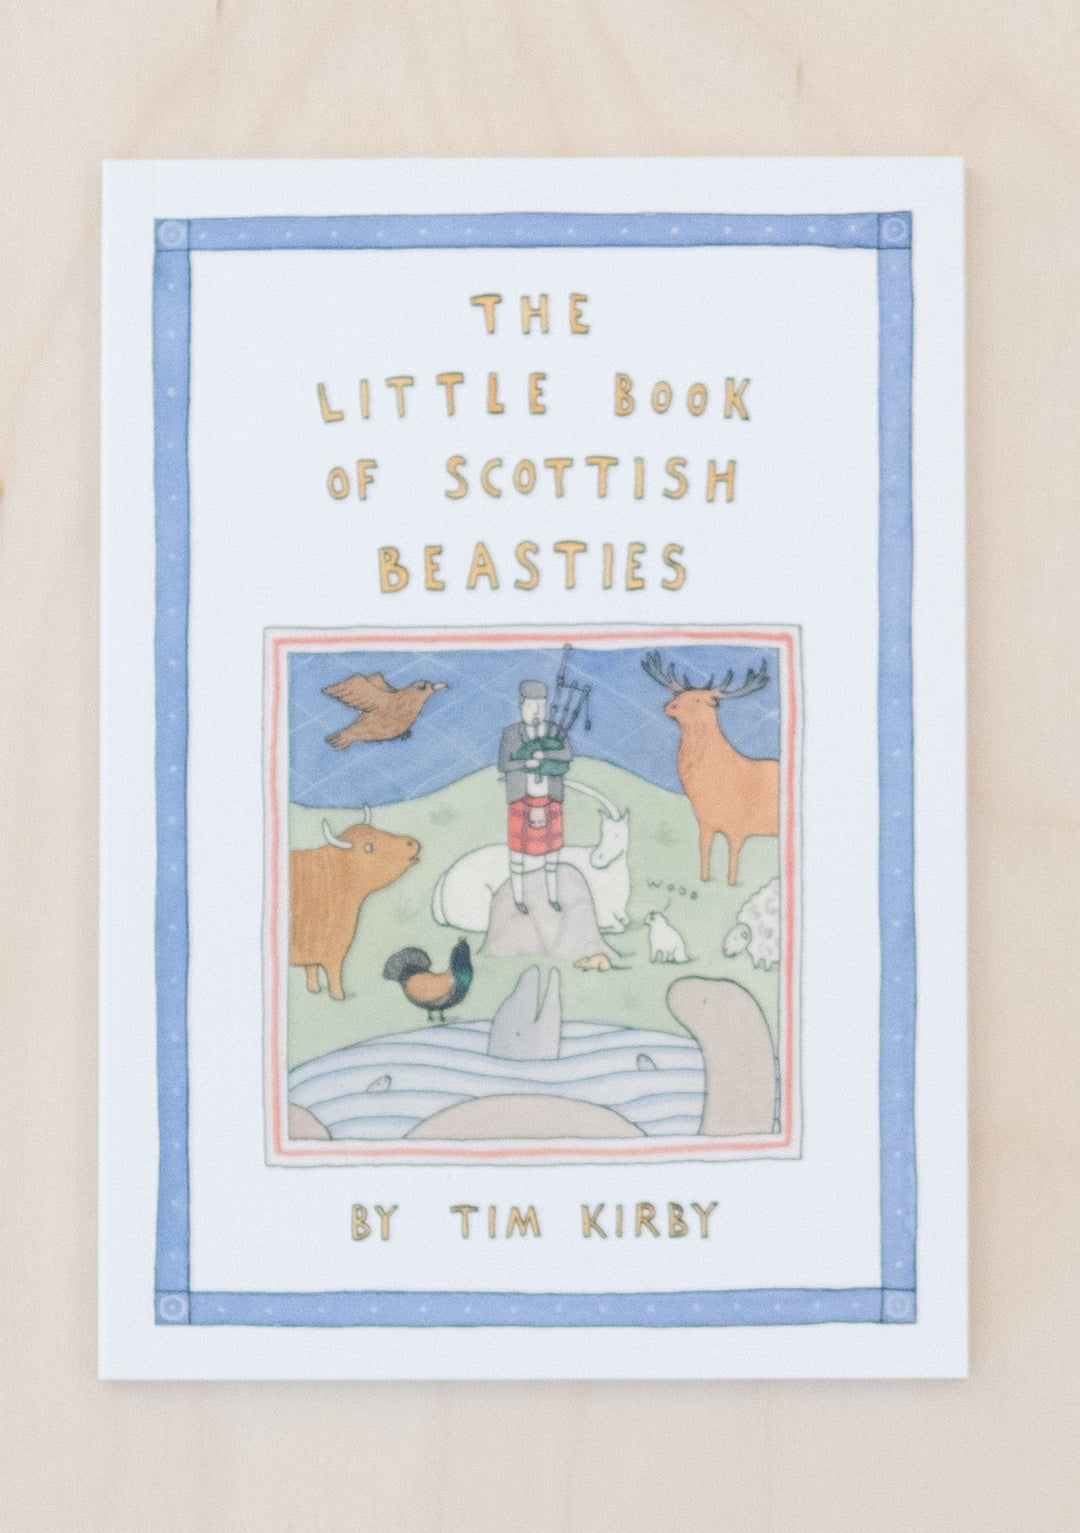 Das kleine Buch der schottischen Bestien